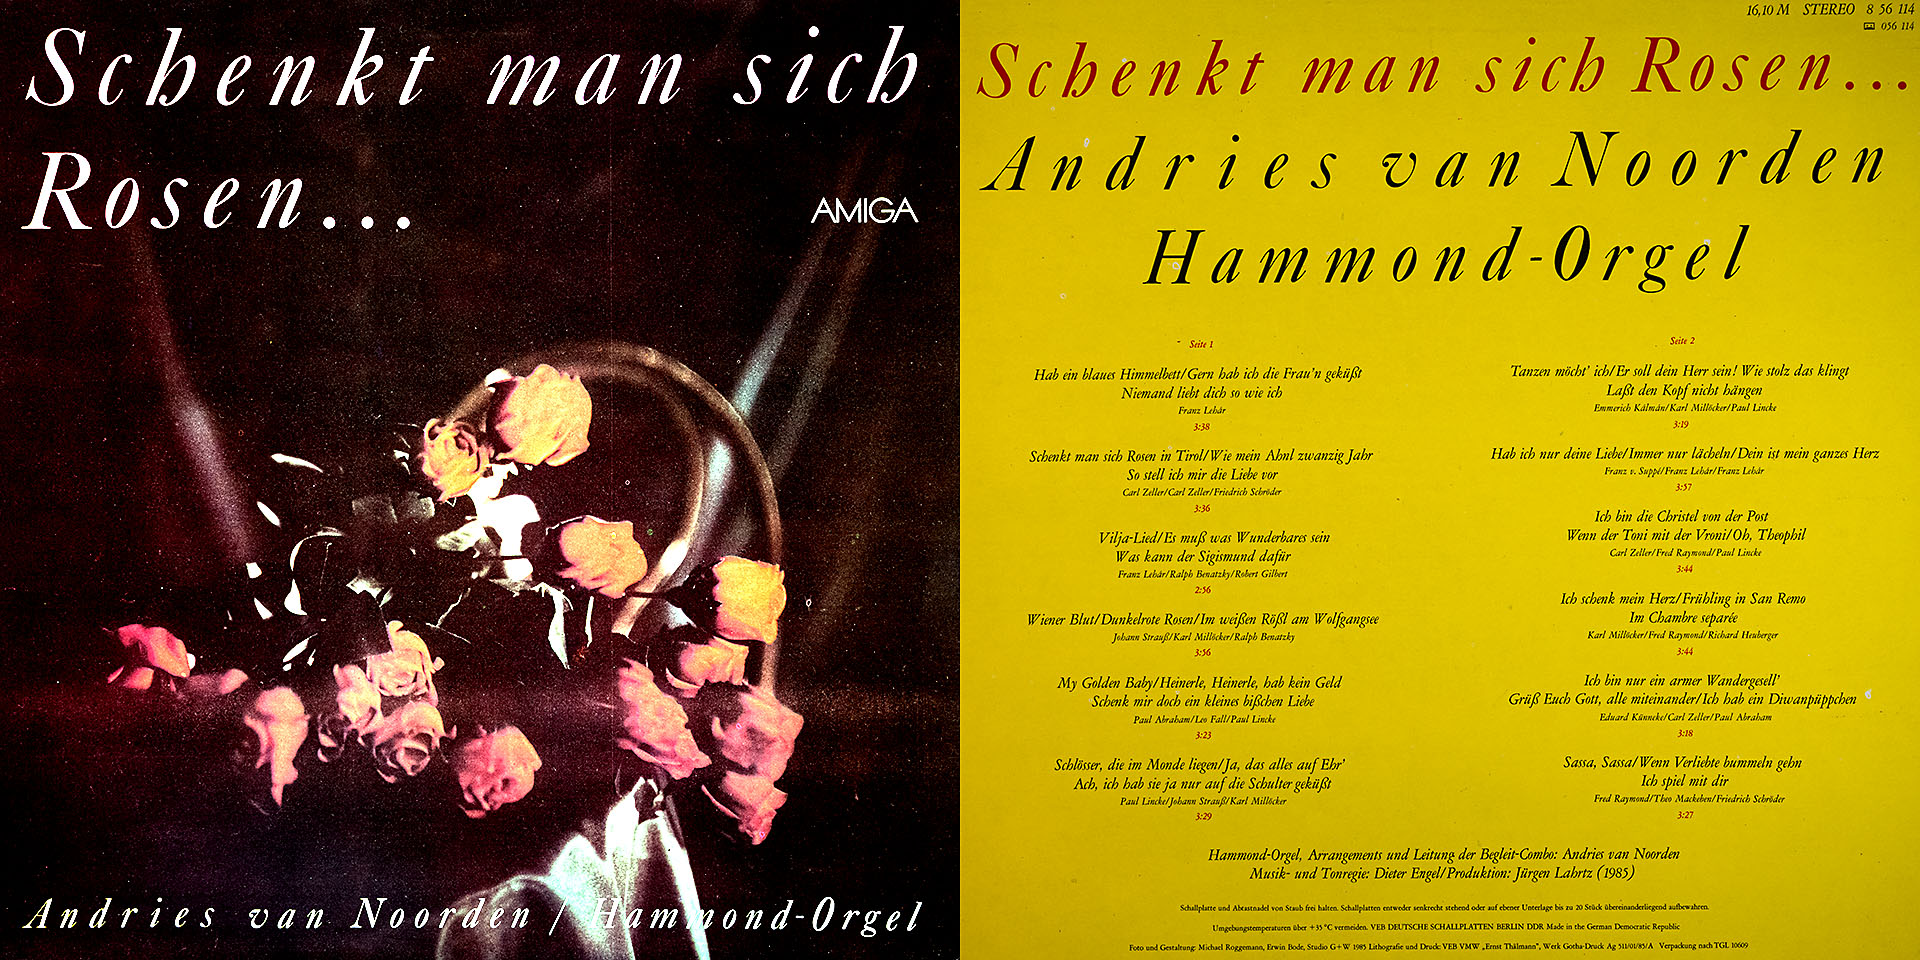 Schenkt man sich Rosen  - Andries van Noorden an der Hammond - Orgel